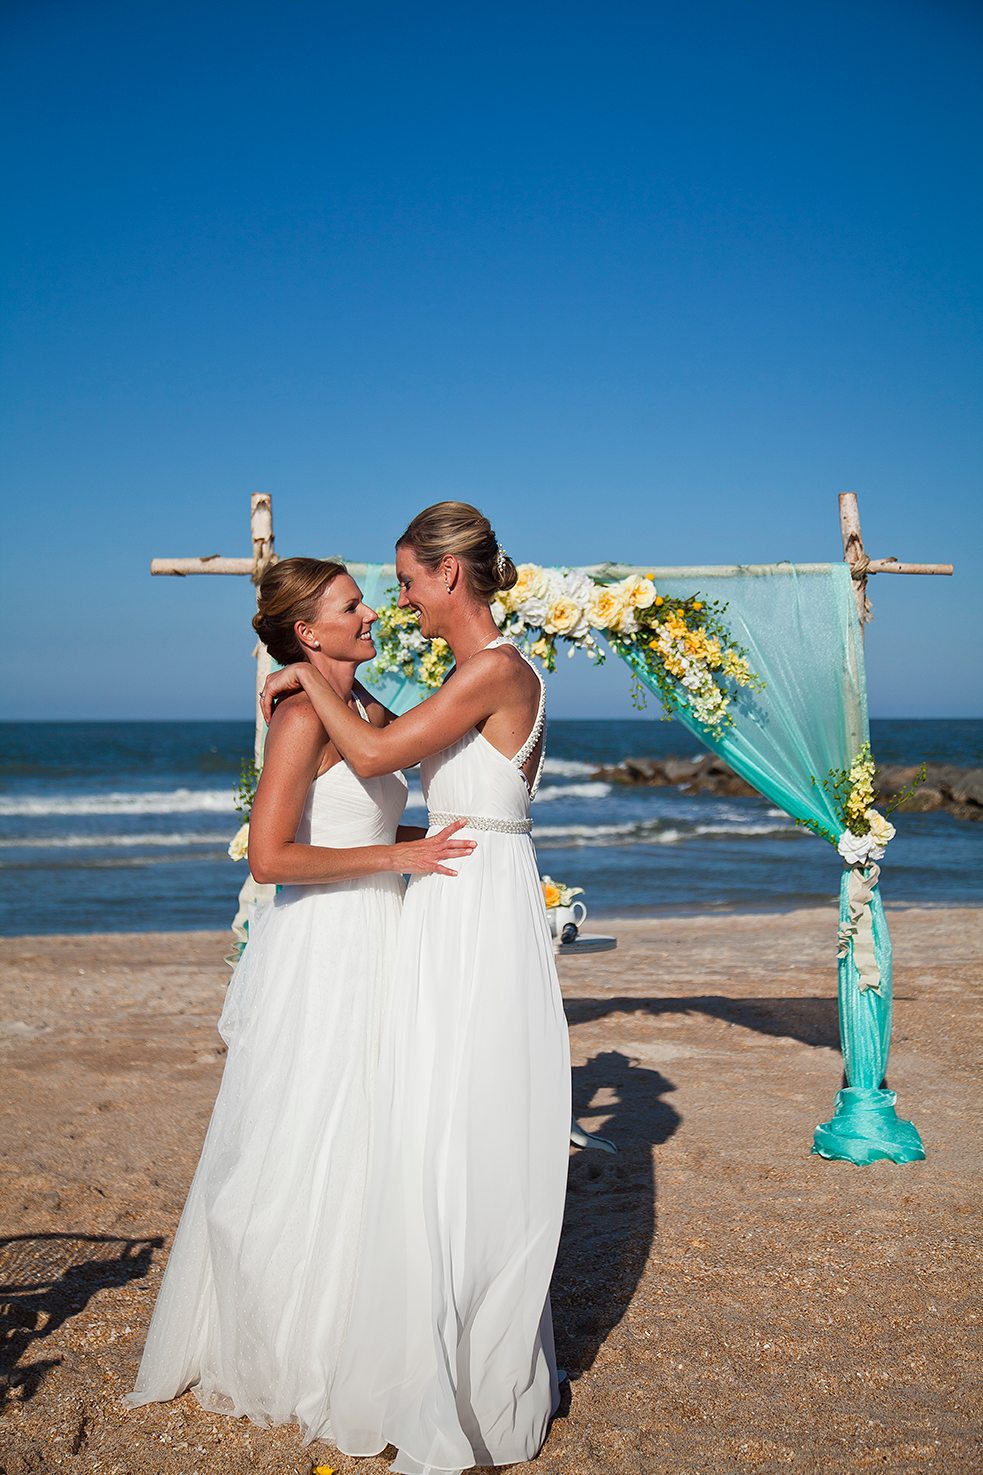 Florida Beach Weddings | Sun and Sea Beach Weddings ...